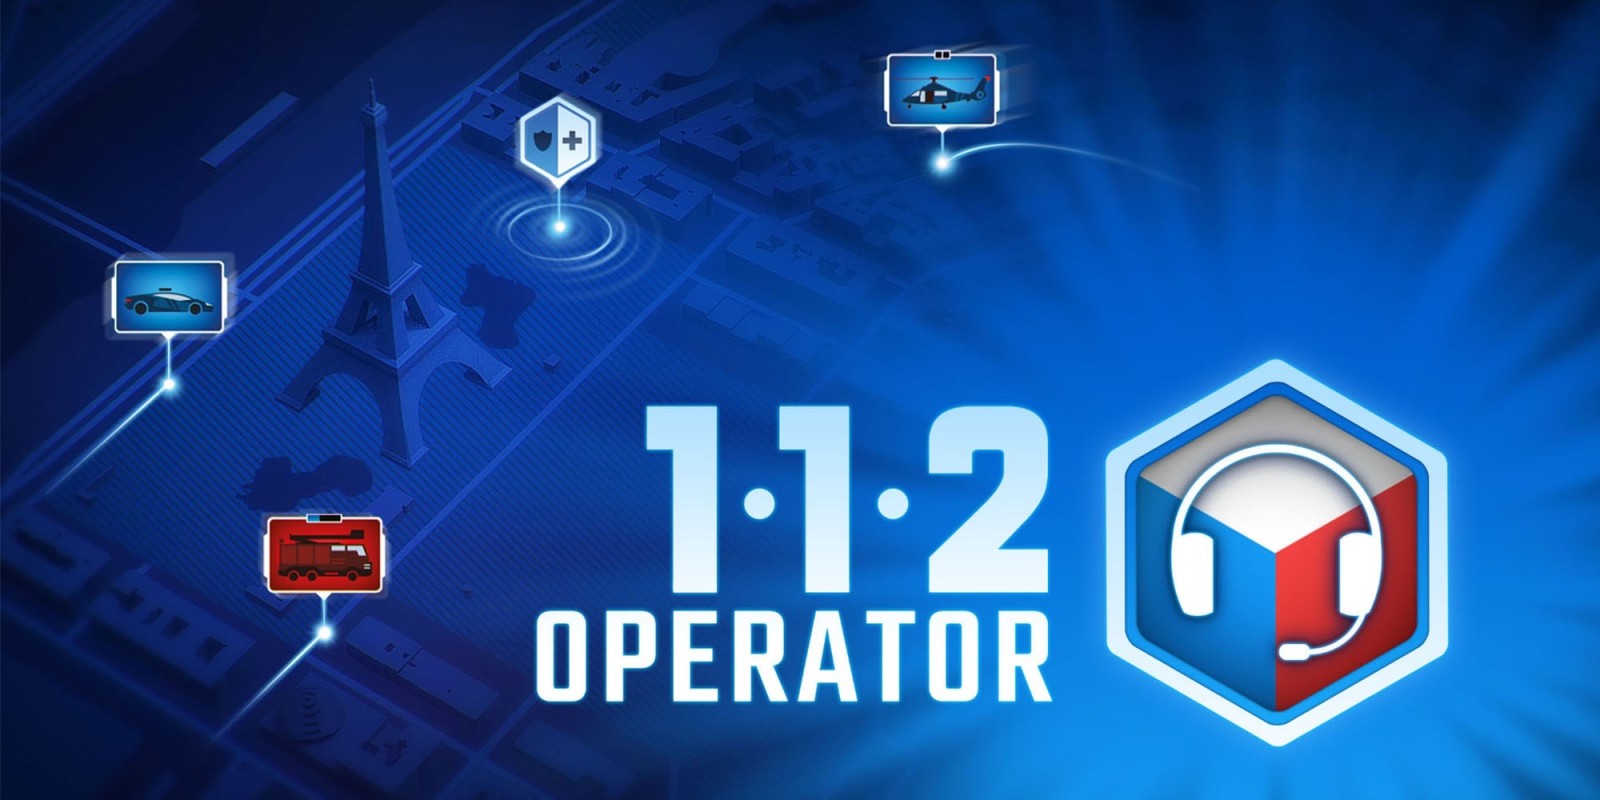 112 operator free game